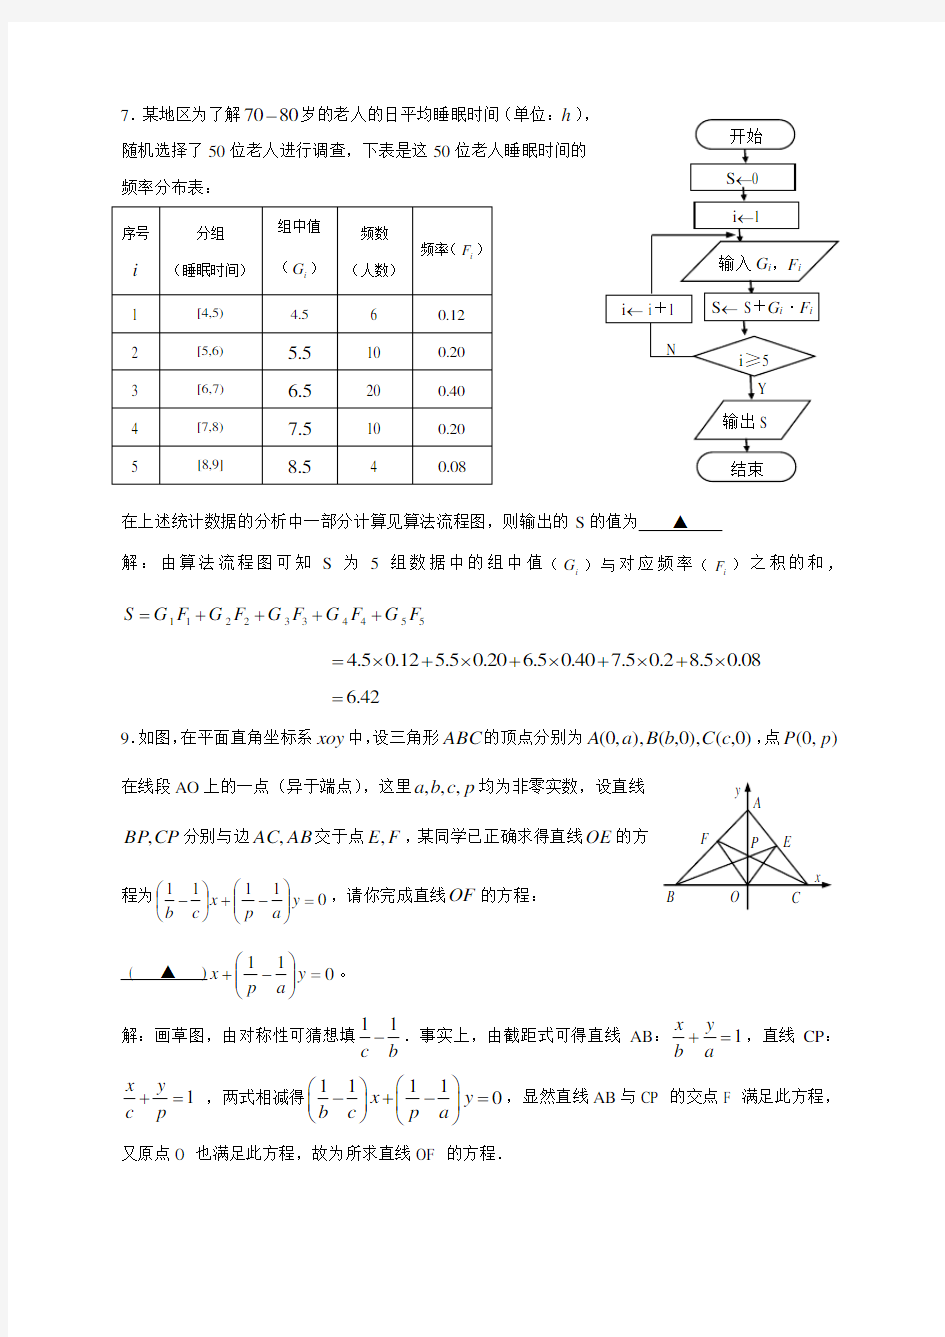 2008高考江苏数学试卷含附加题详细解答全版080718